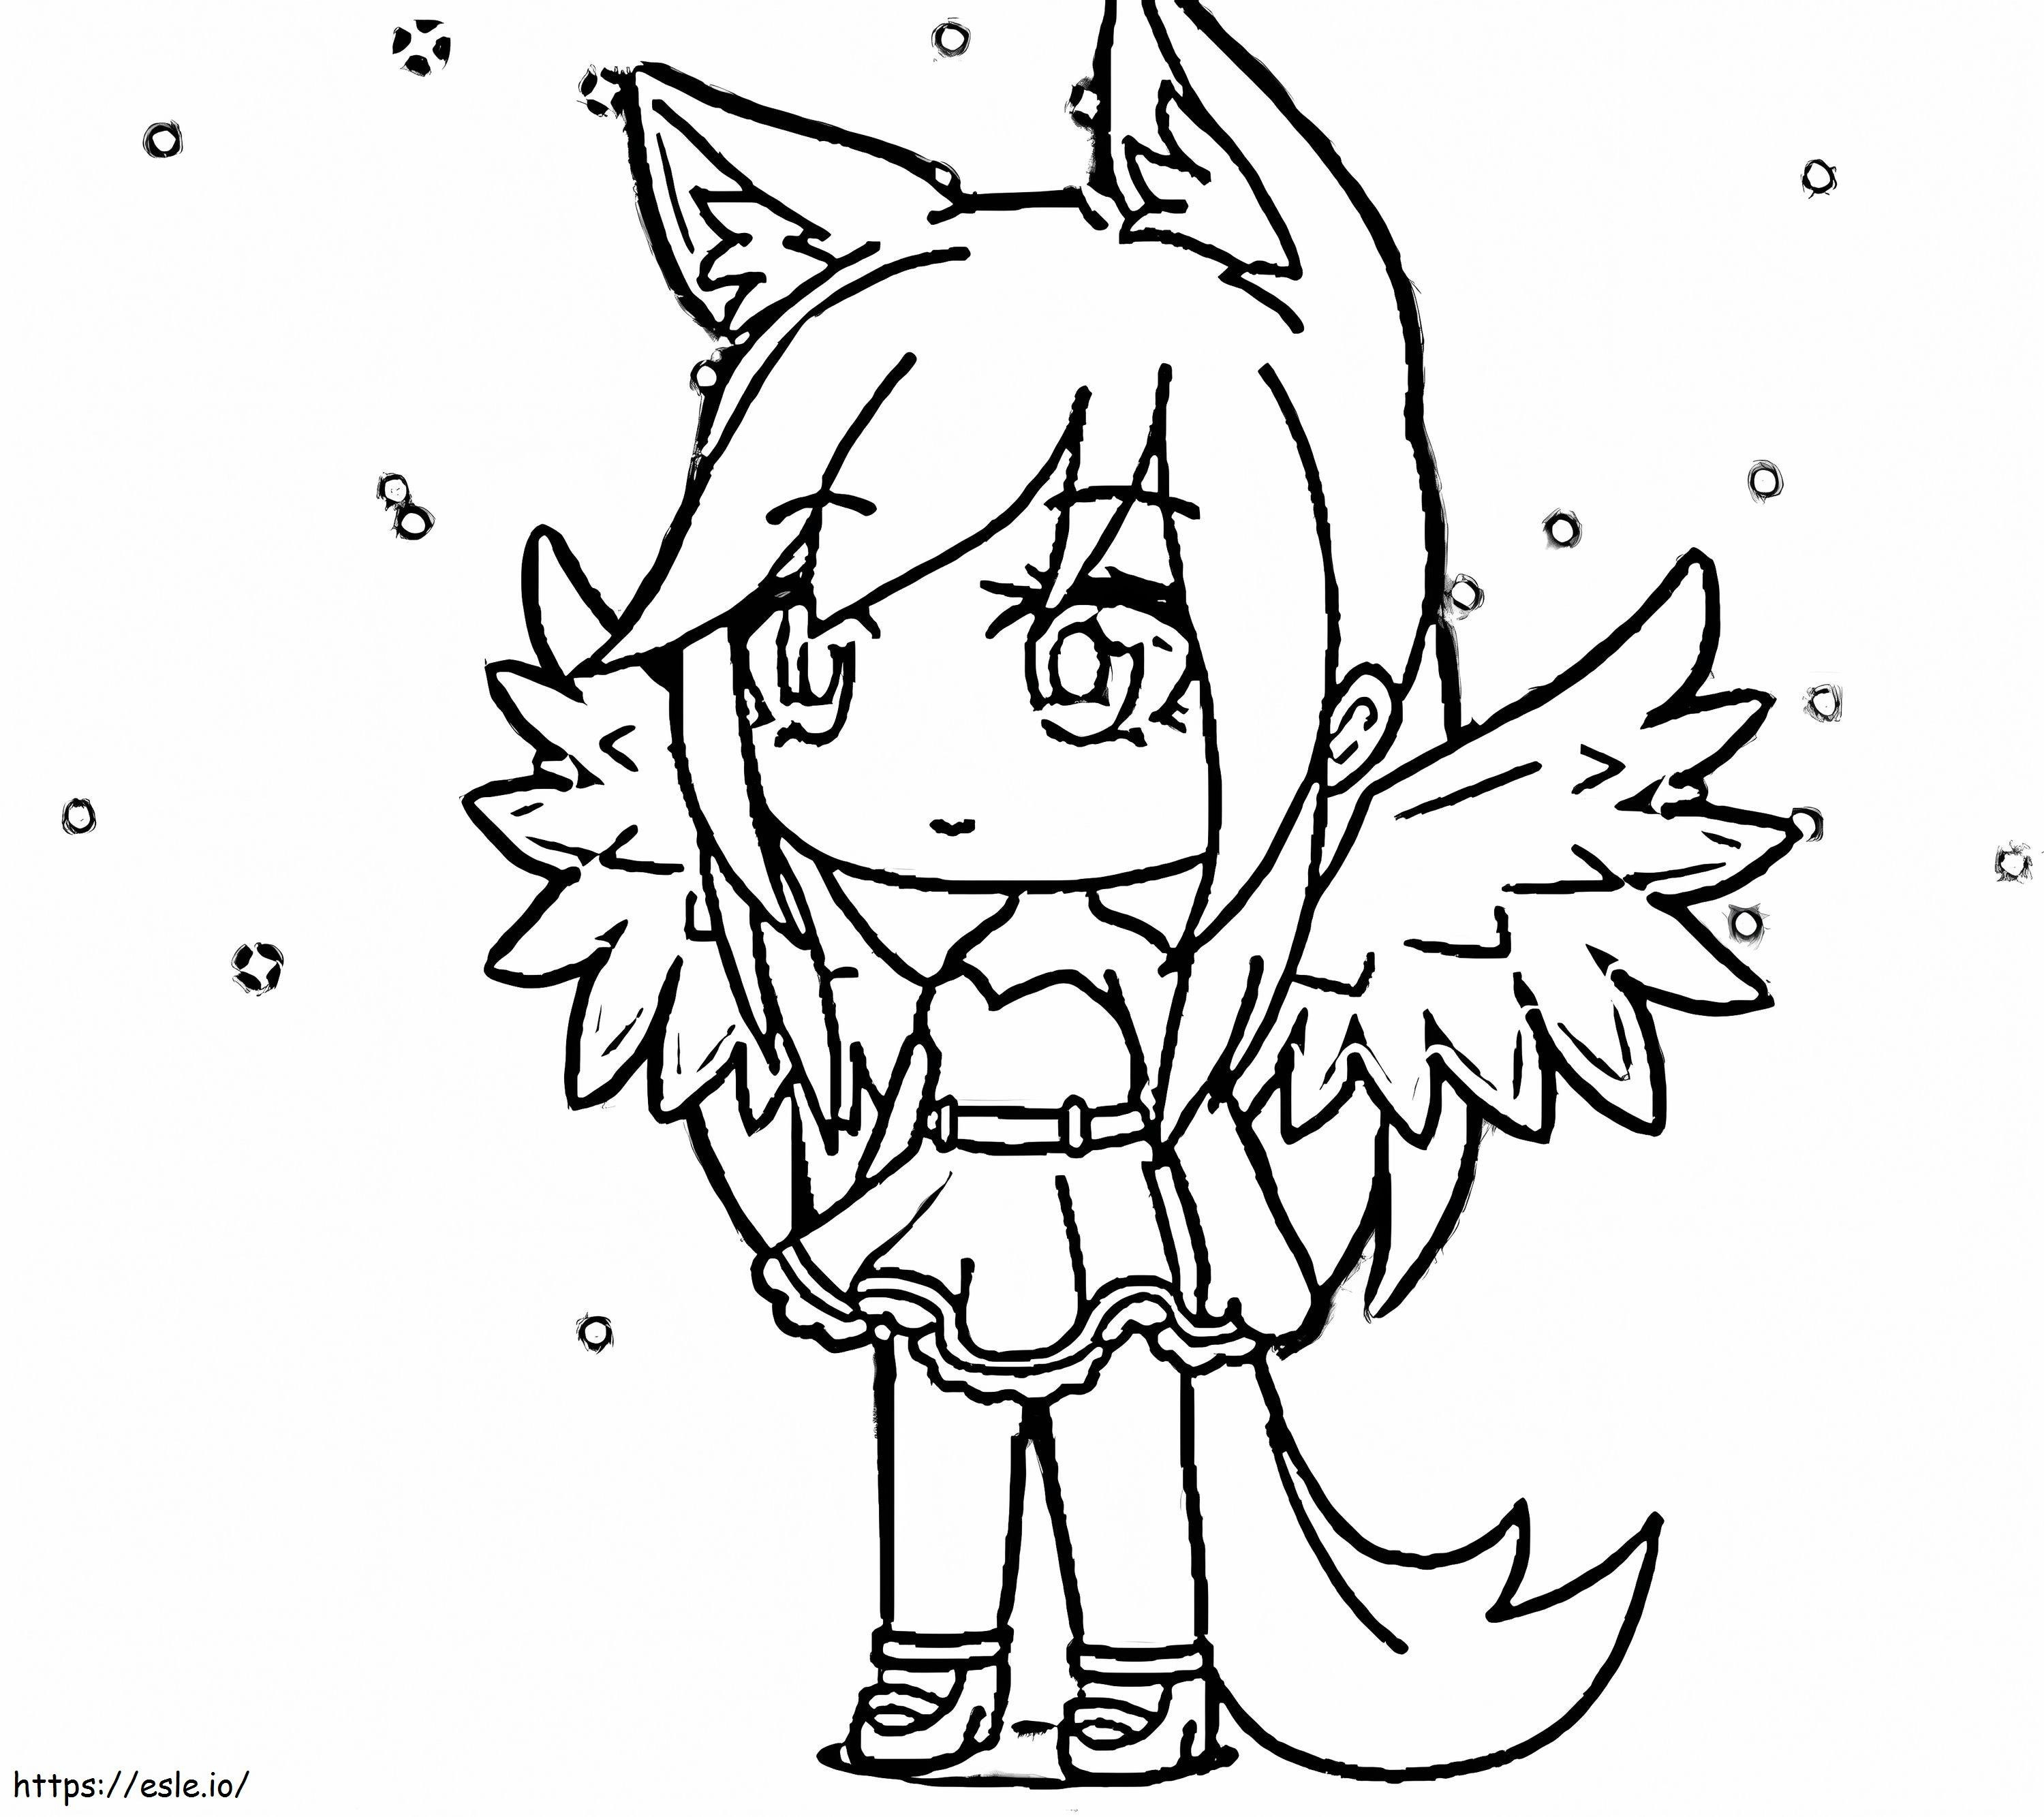 Lobo menina com asas para colorir